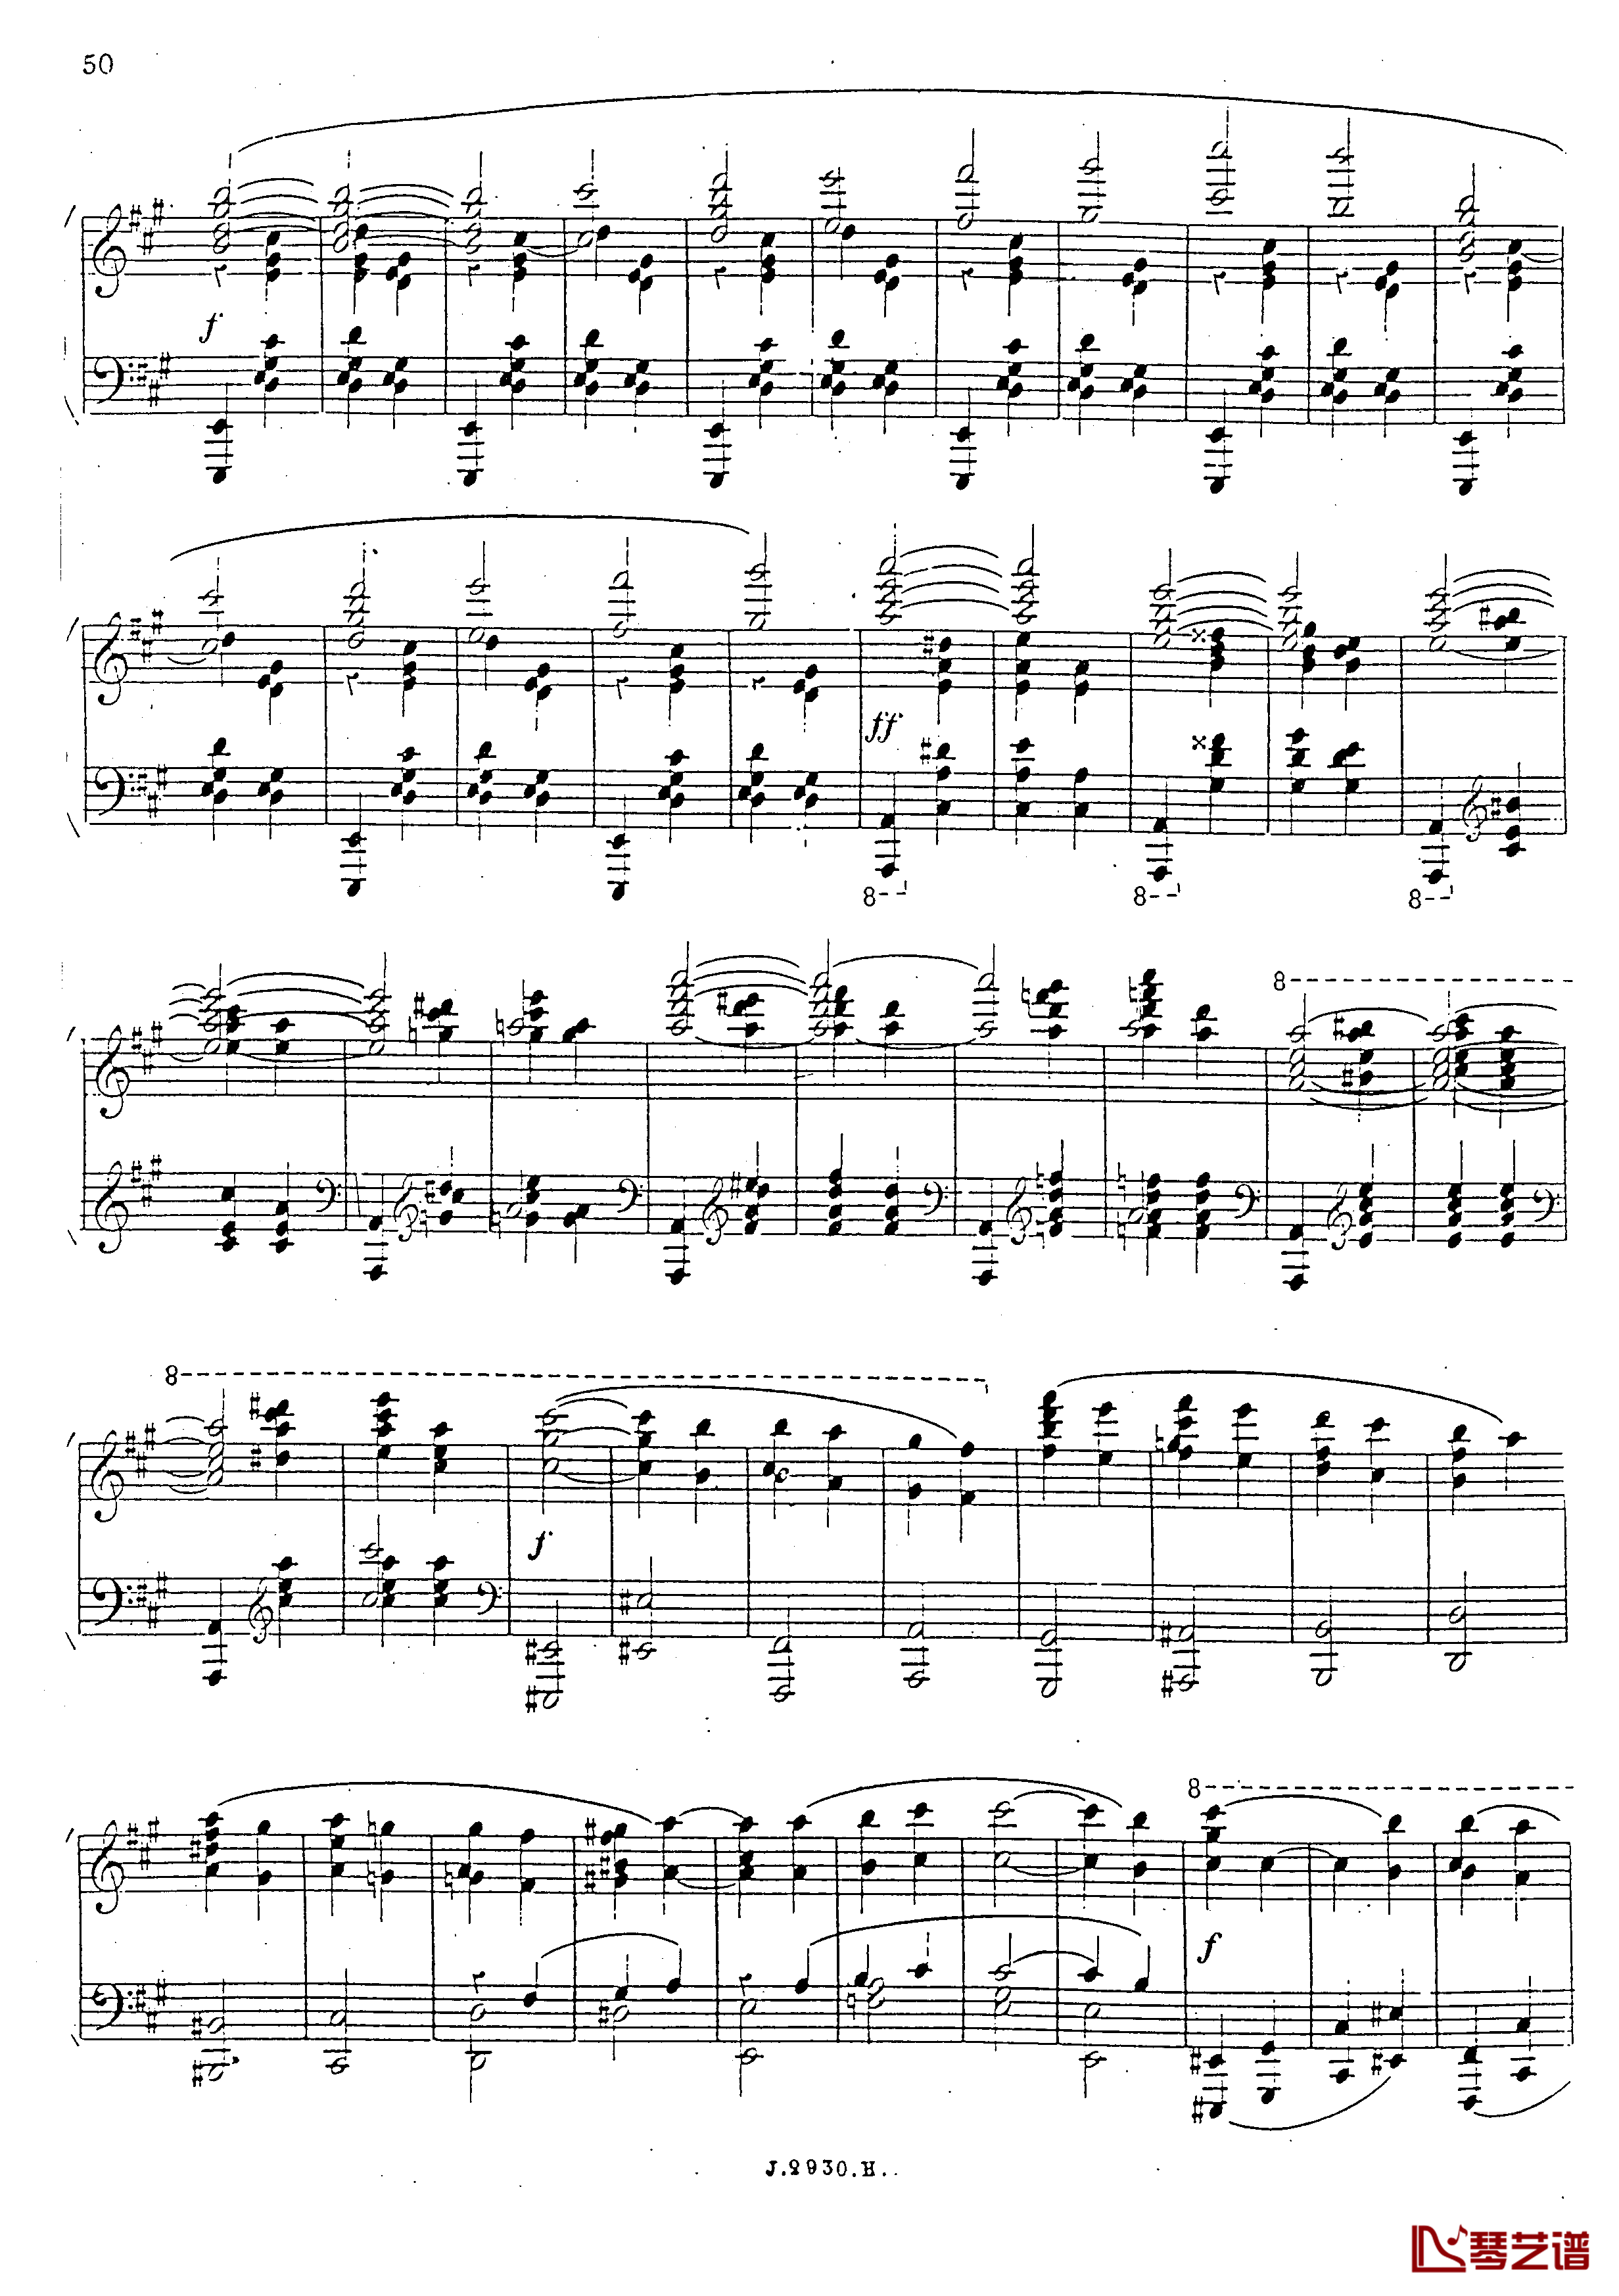 a小调第四钢琴奏鸣曲钢琴谱-安东 鲁宾斯坦- Op.10051